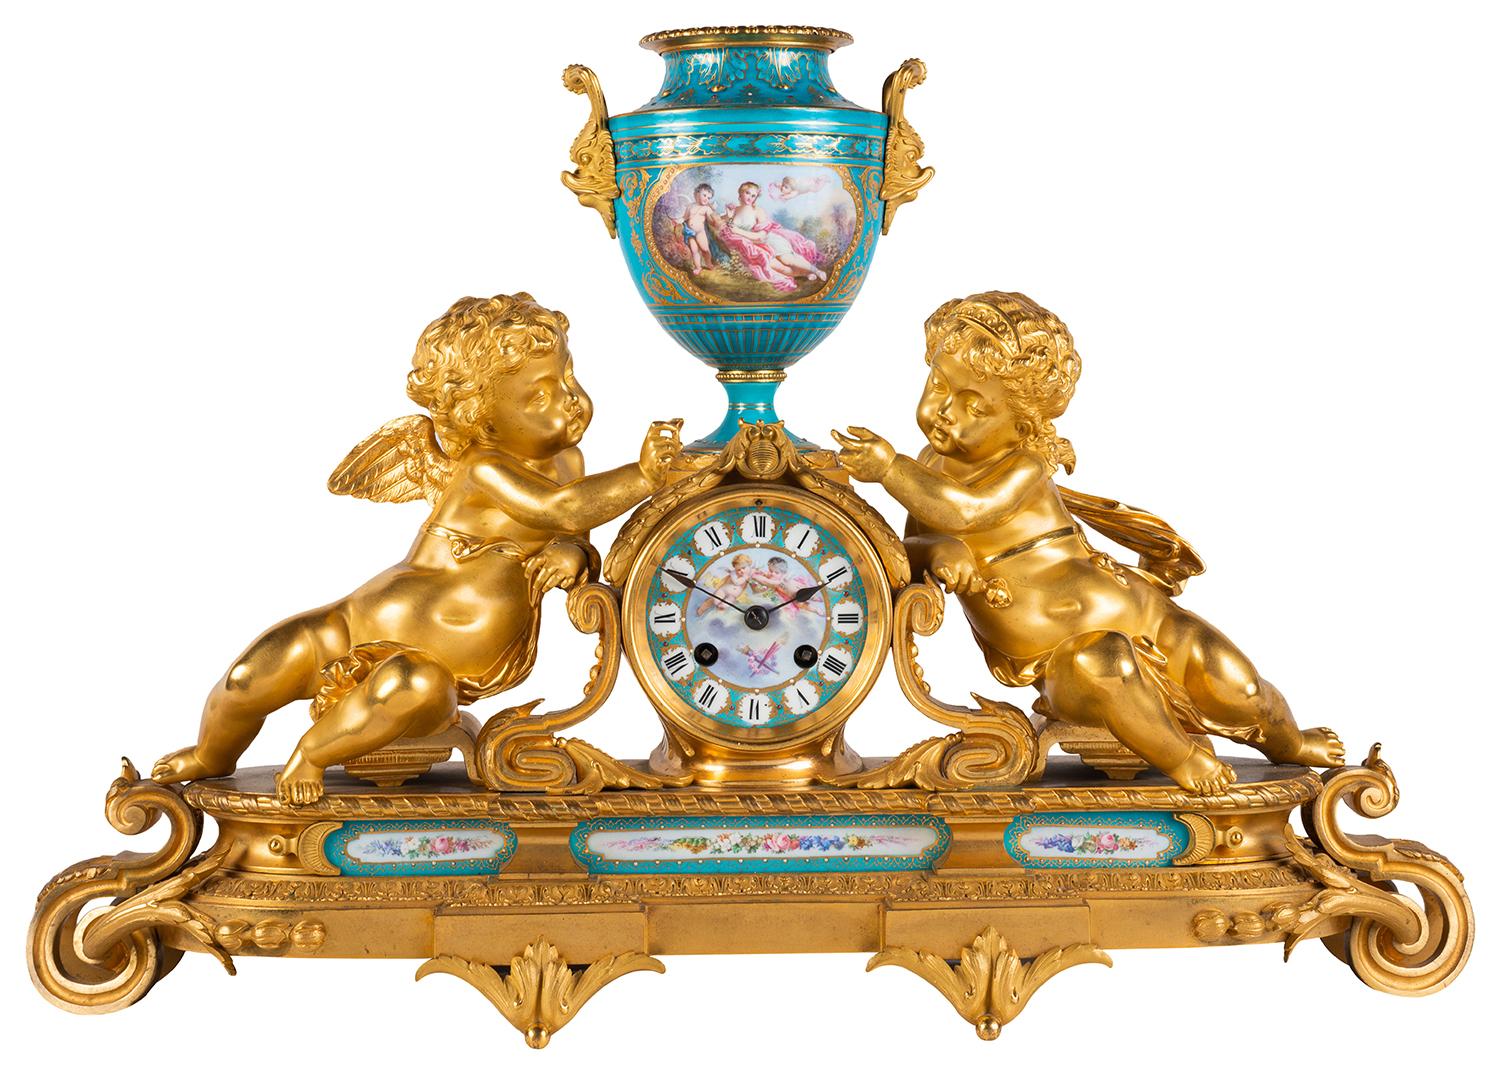 Garniture d'horloge en porcelaine de style Sèvres et bronze doré de très bonne qualité, datant de la fin du XIXe siècle. Avec une paire de chérubins de chaque côté de l'horloge et de l'urne centrale, des scènes classiques peintes à la main sur les